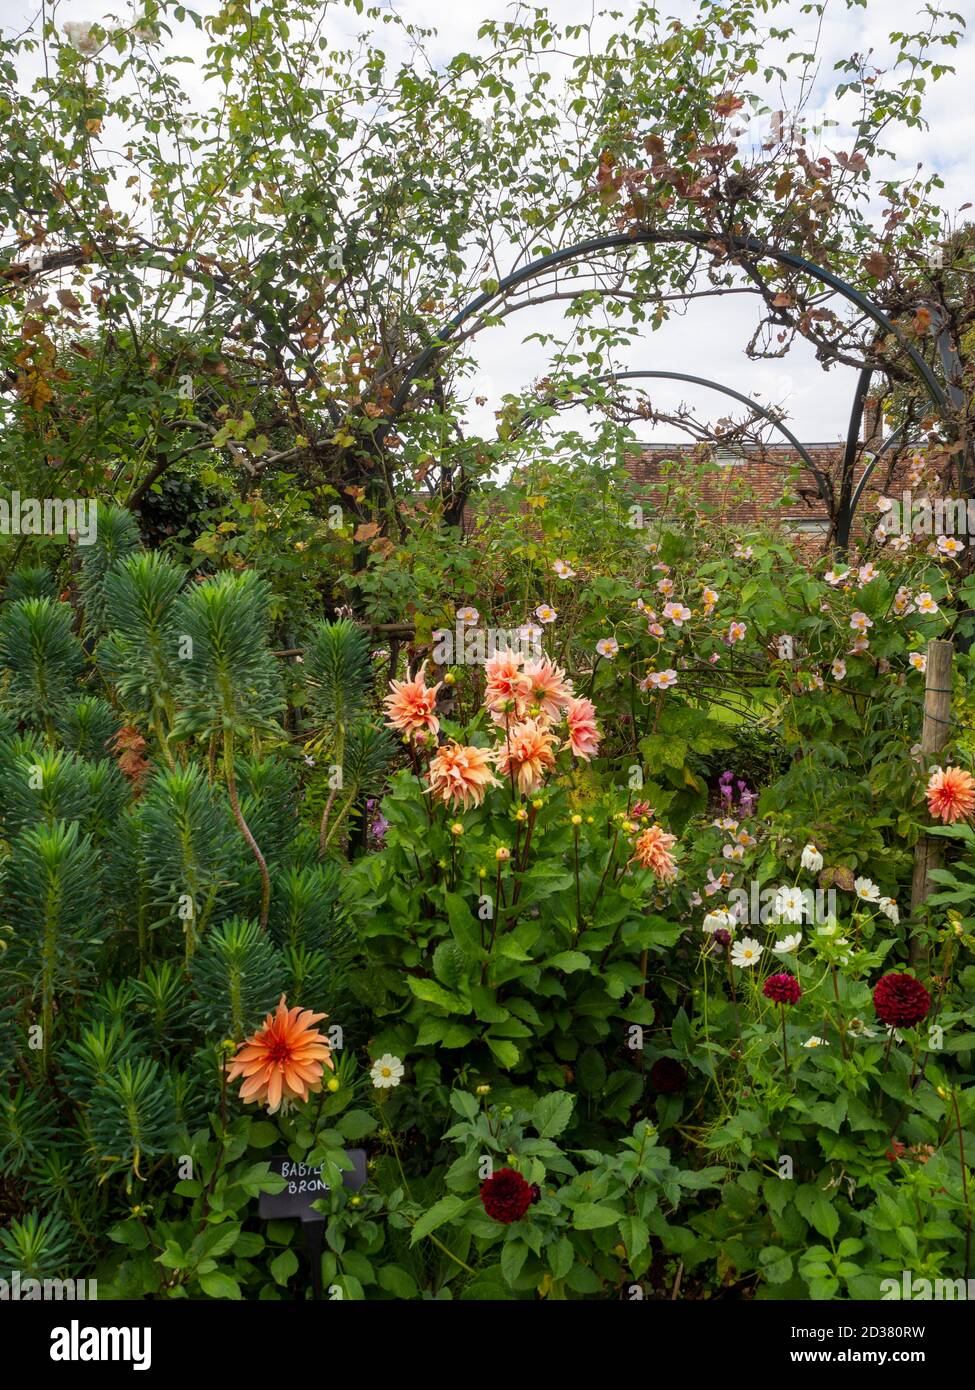 Chenies Manor Gärten im September. Kletterrose auf den Bögen mit Anemone Japonica, Dahlia 'Labyrinth' und Dahlia 'Babylon Brons', weiße Gänseblümchen. Stockfoto